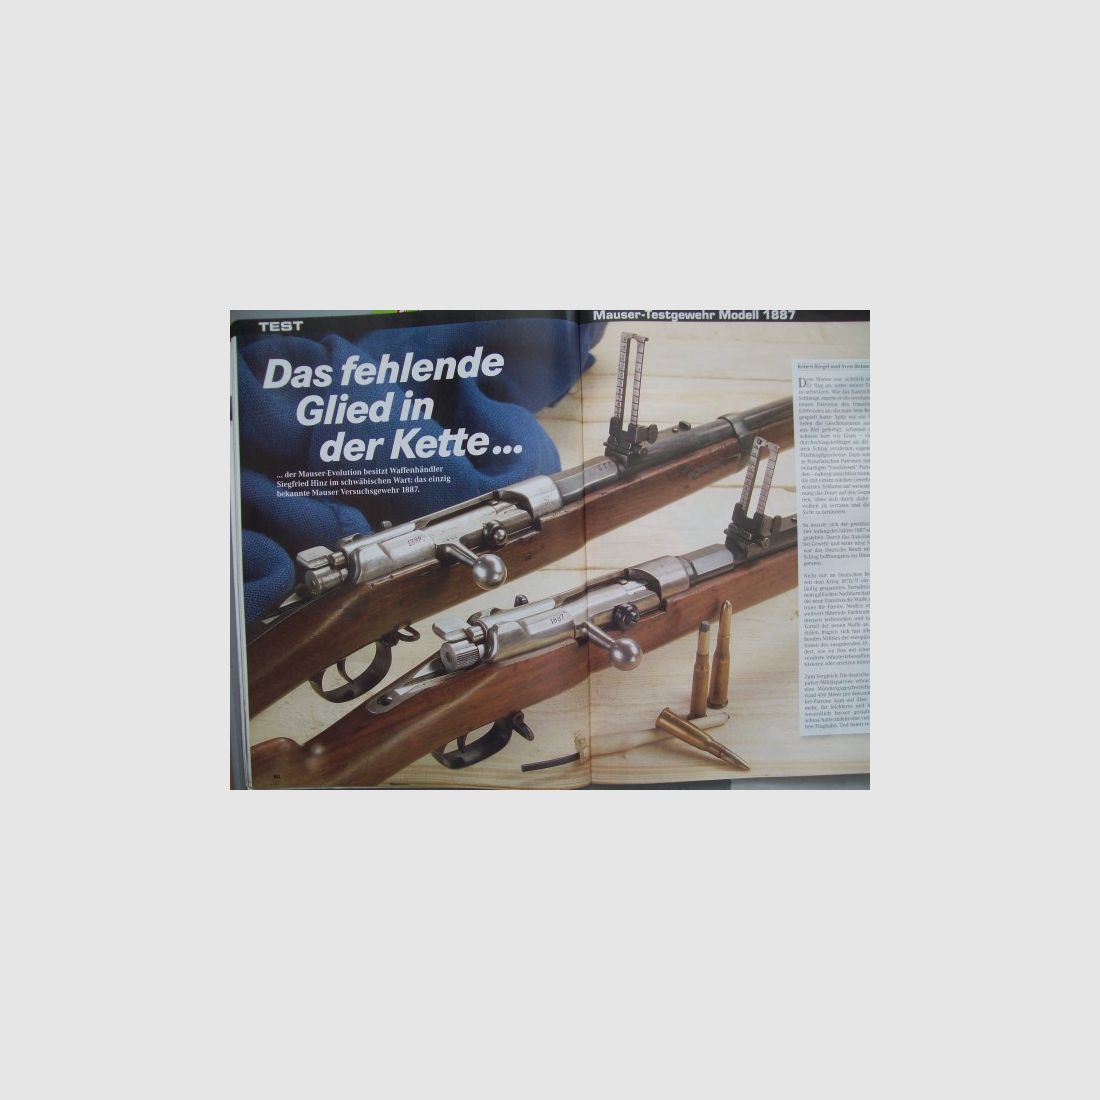 Visier-Heft -- ** Eine Rarität -- Mauser -Testgewehr Modell 1887 **